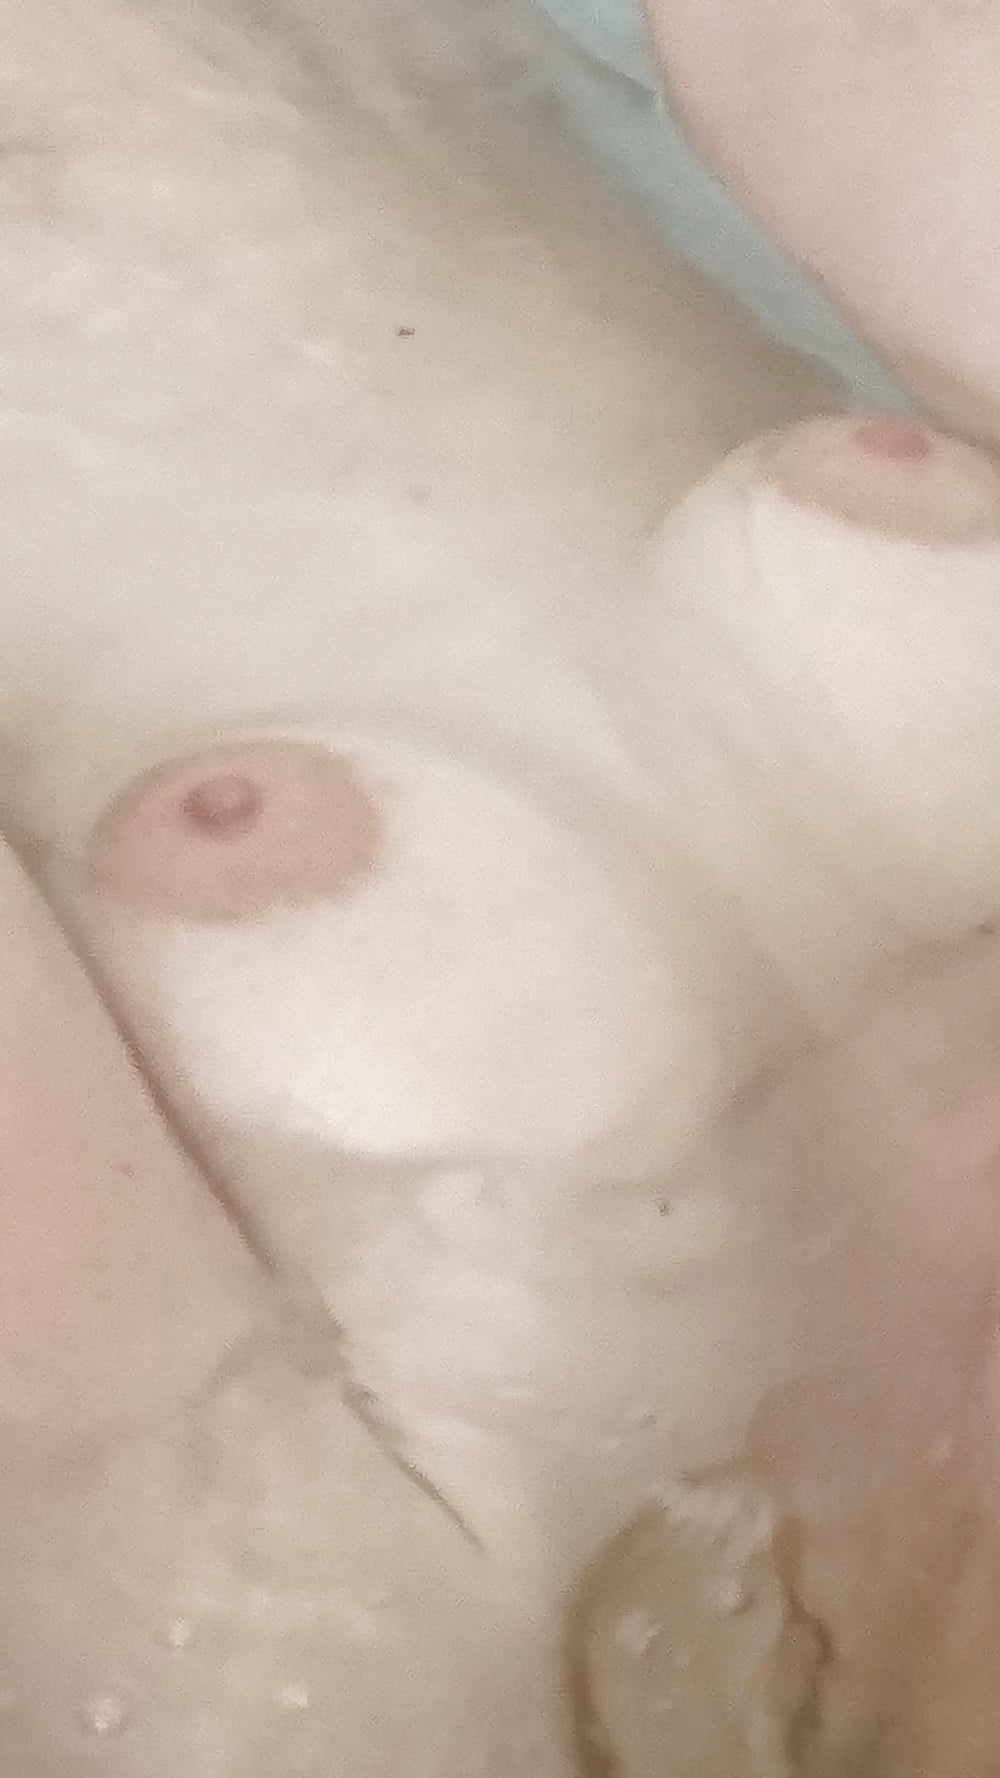 Les seins de ma femme pict gal